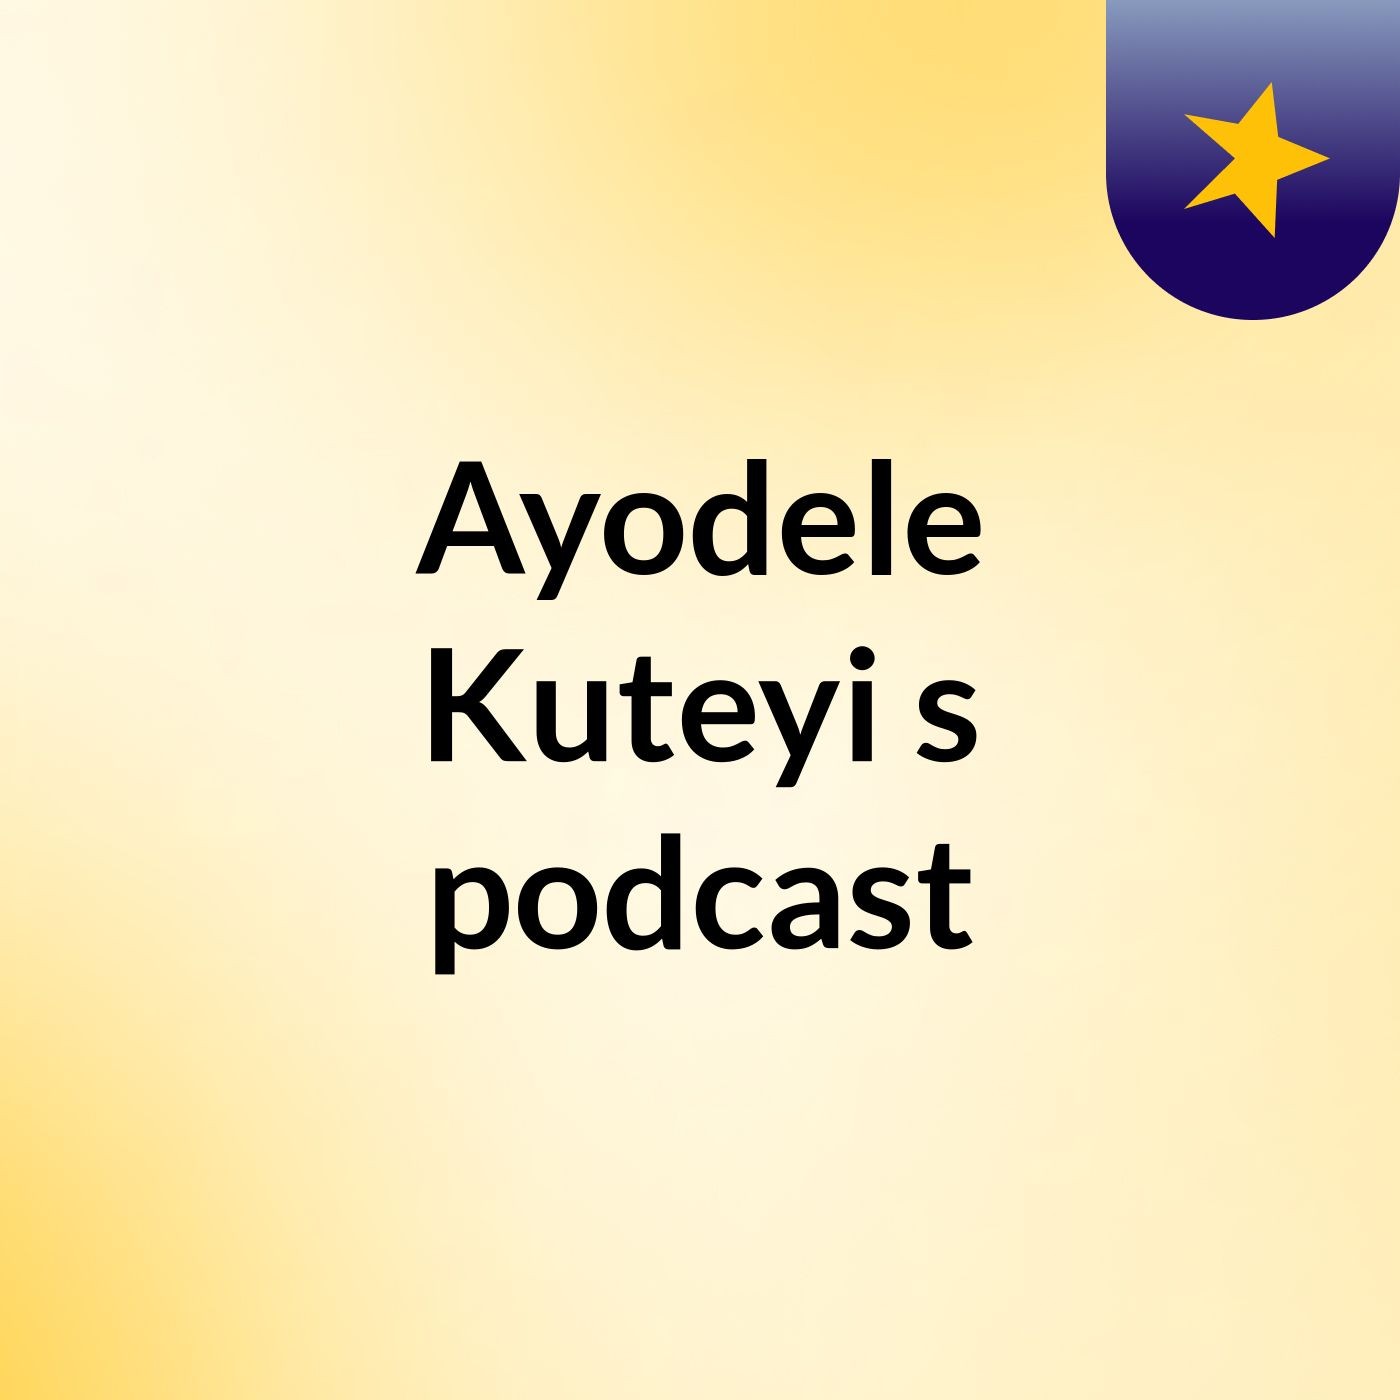 Episode 25 - Ayodele Kuteyi's podcast